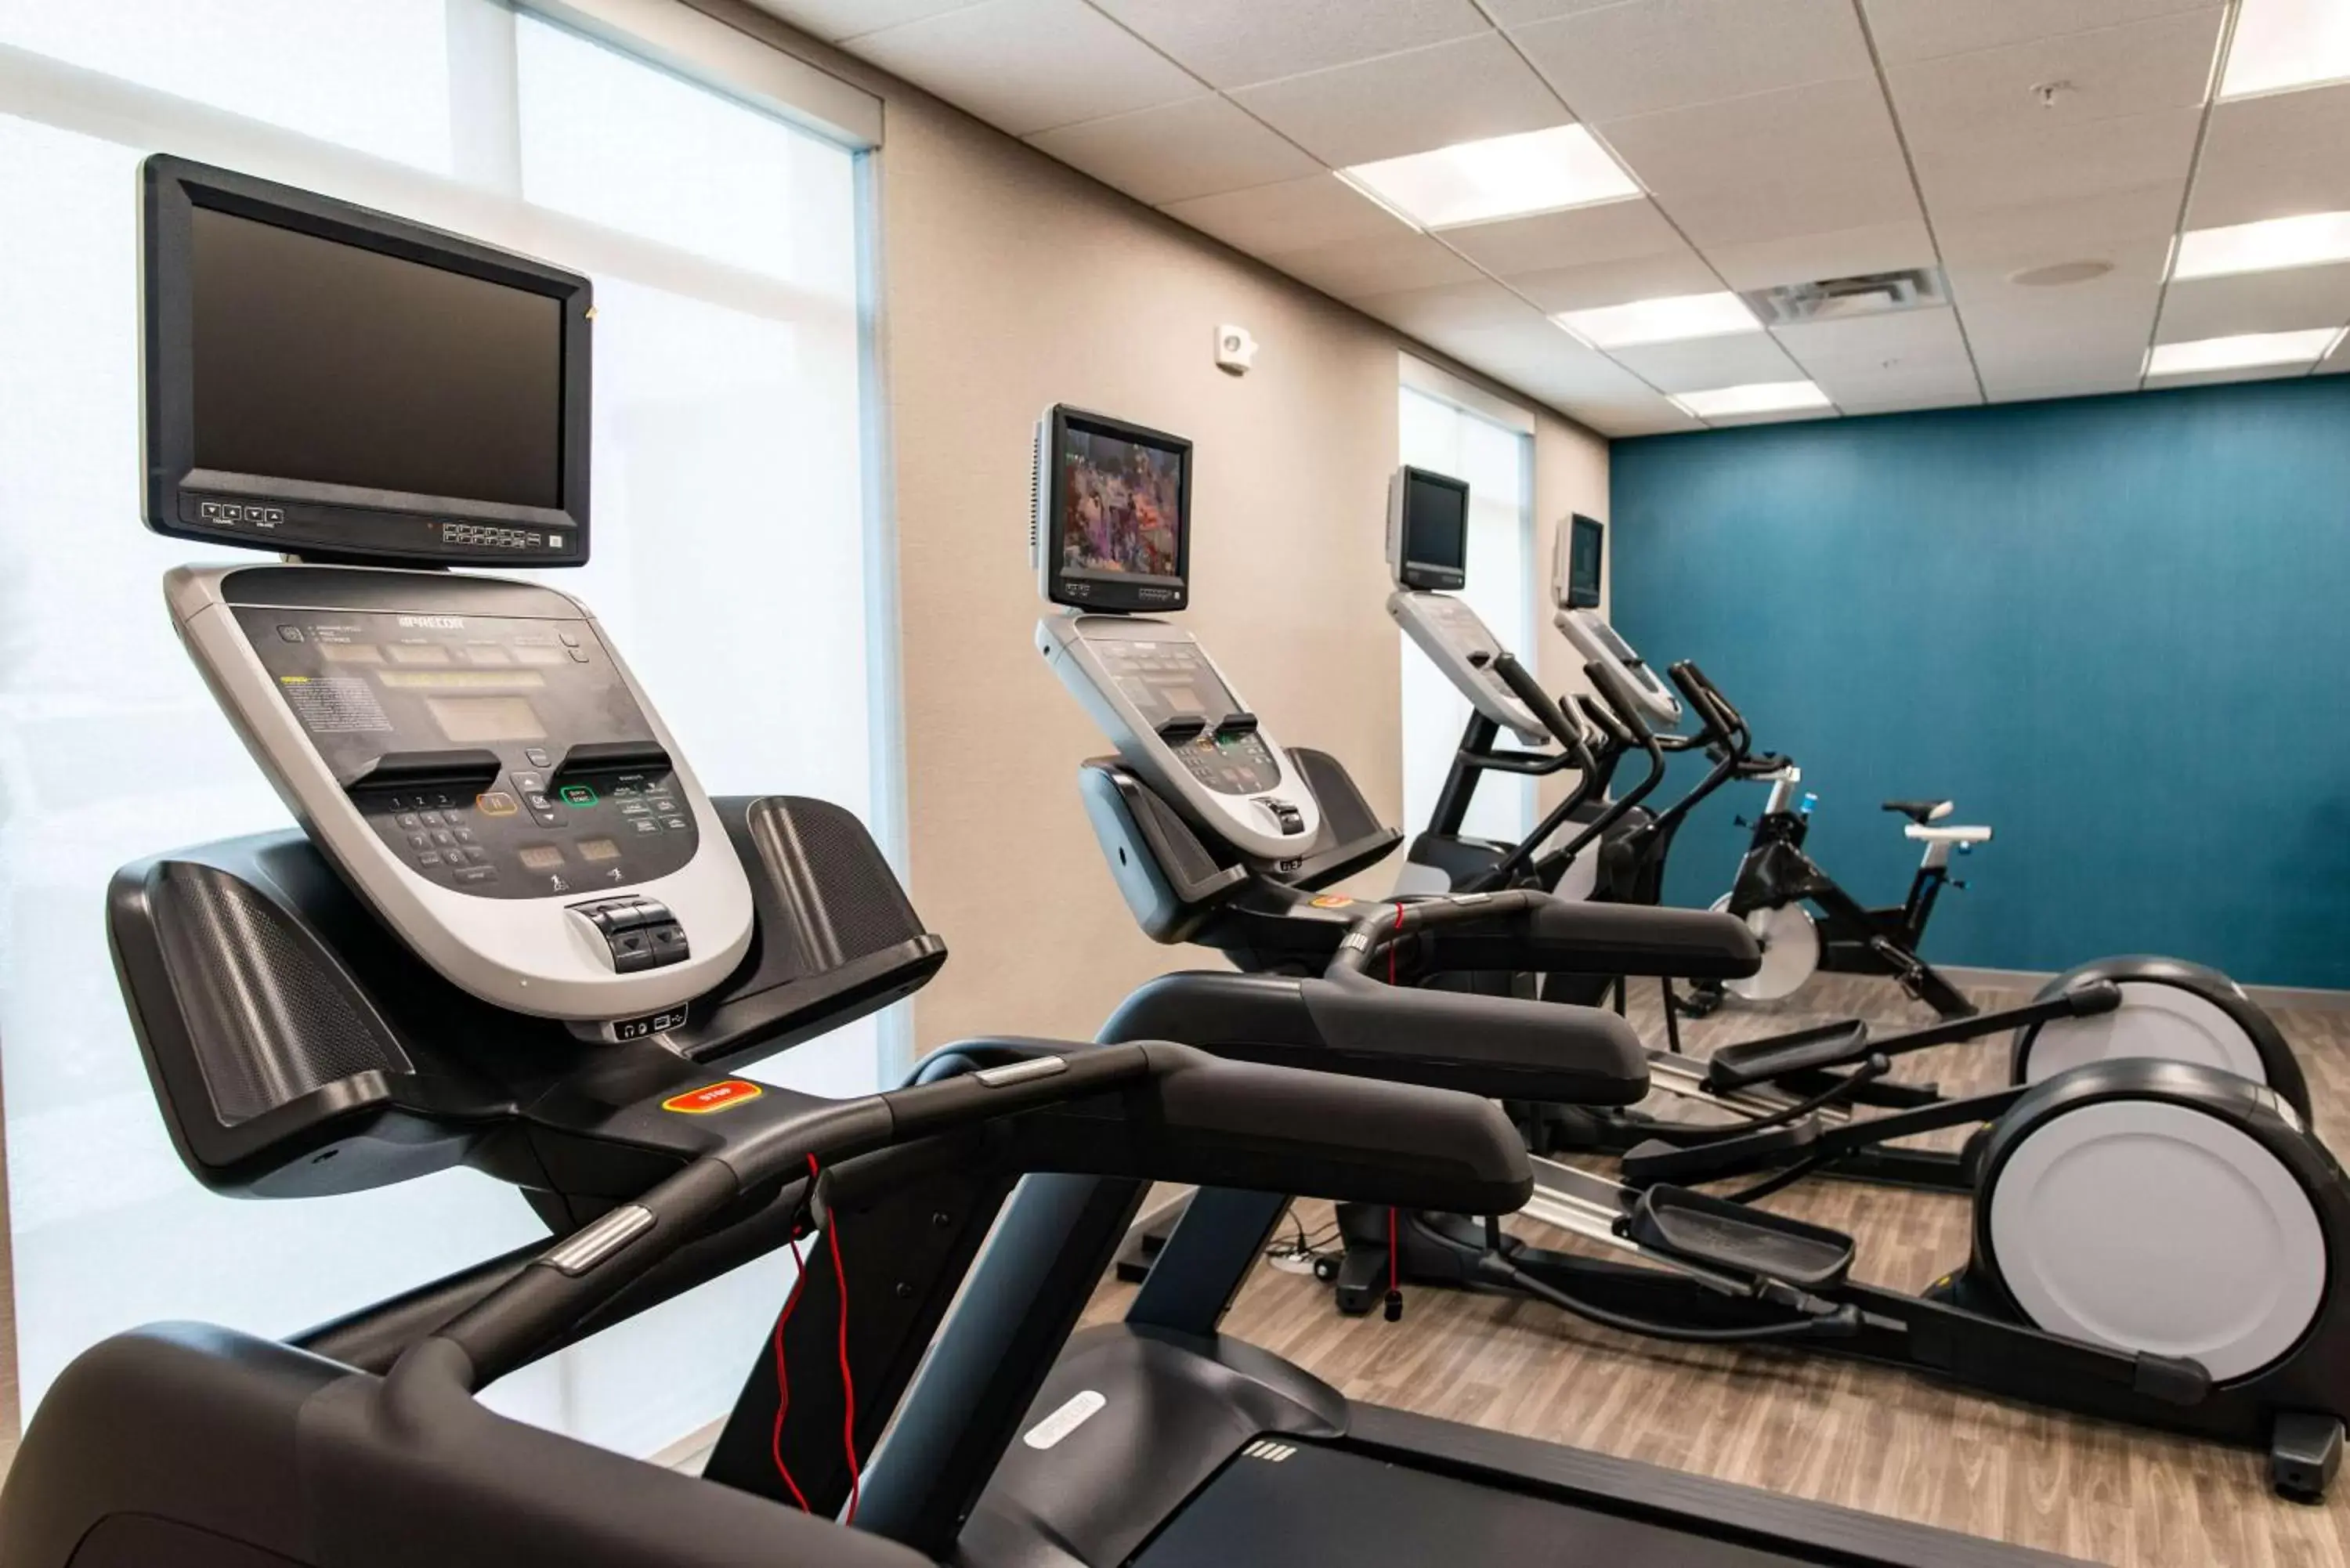 Fitness centre/facilities, Fitness Center/Facilities in Hampton Inn Paris IL, IL